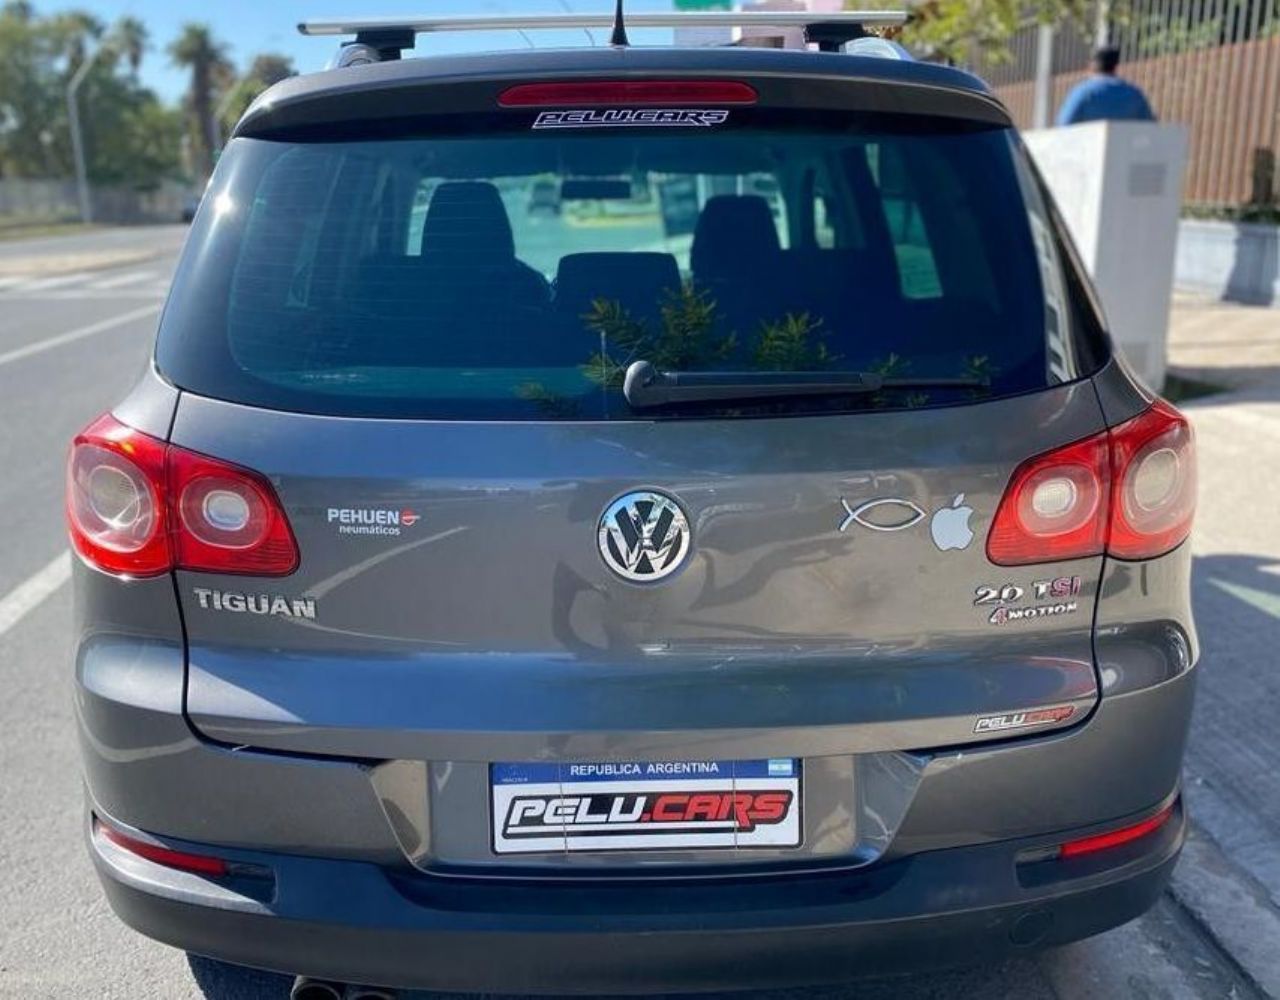 Volkswagen Tiguan Usado en San Juan, deRuedas